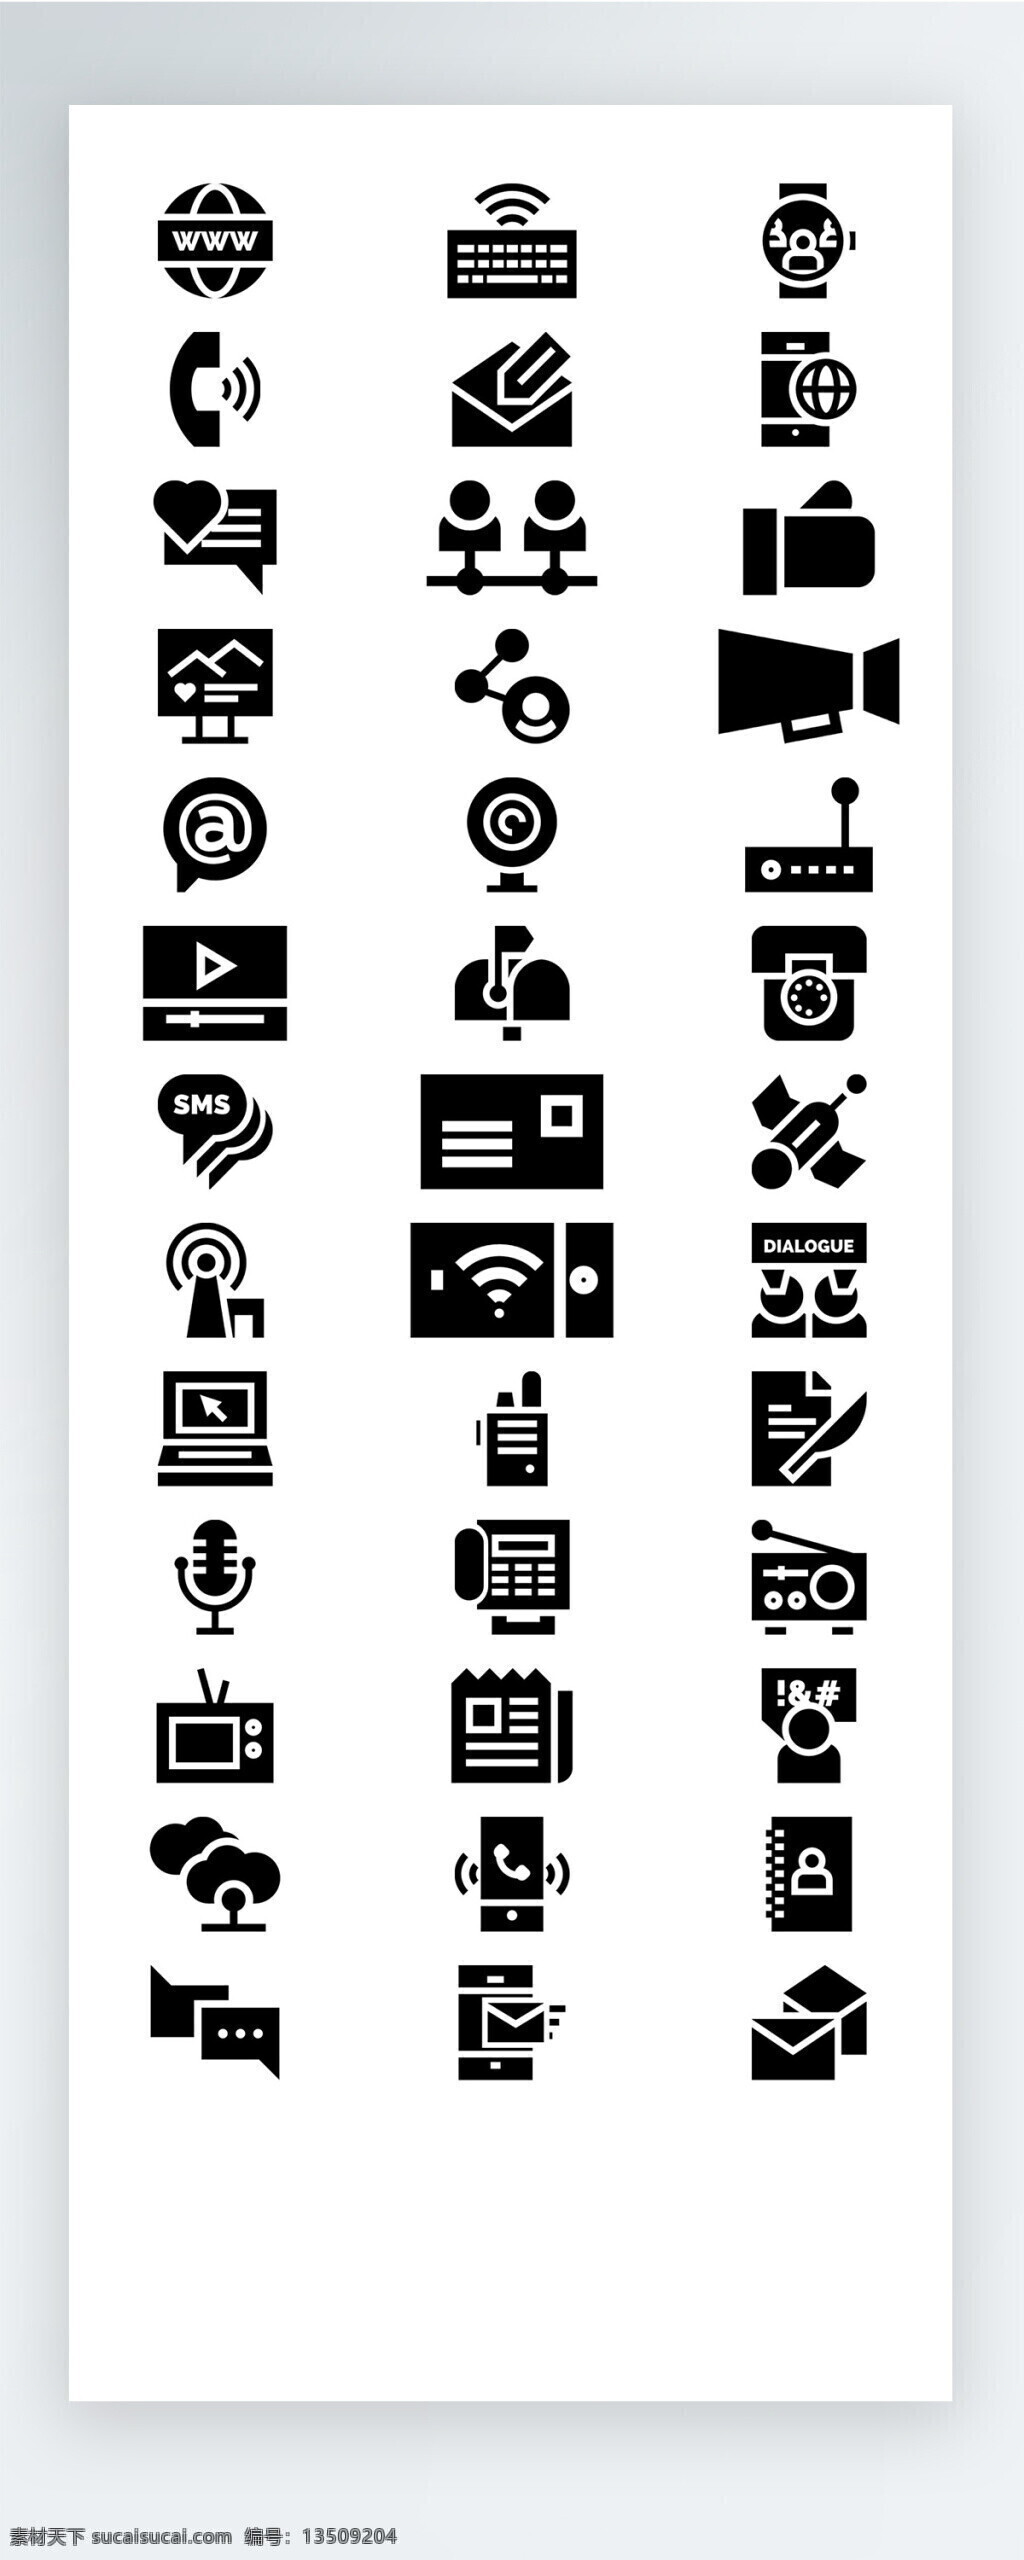 通讯 黑色 工作 生活 图标 矢量 icon icon图标 ui 手机 拟物 电话 喇叭 电视